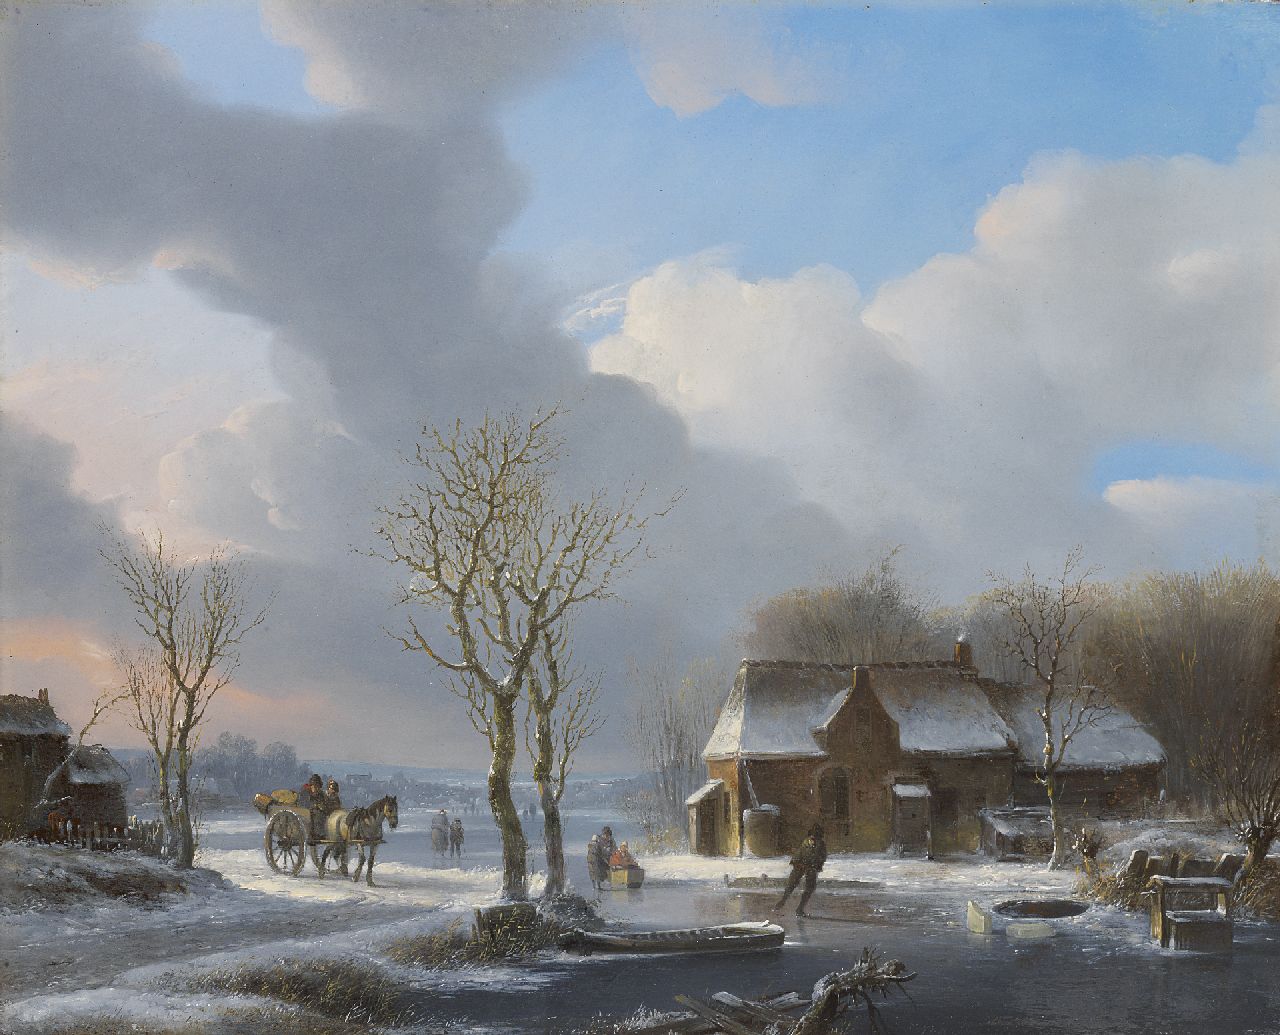 Stok J. van der | Jacobus van der Stok, Ein kalter Wintertag, Öl auf Holz 35,1 x 43,3 cm